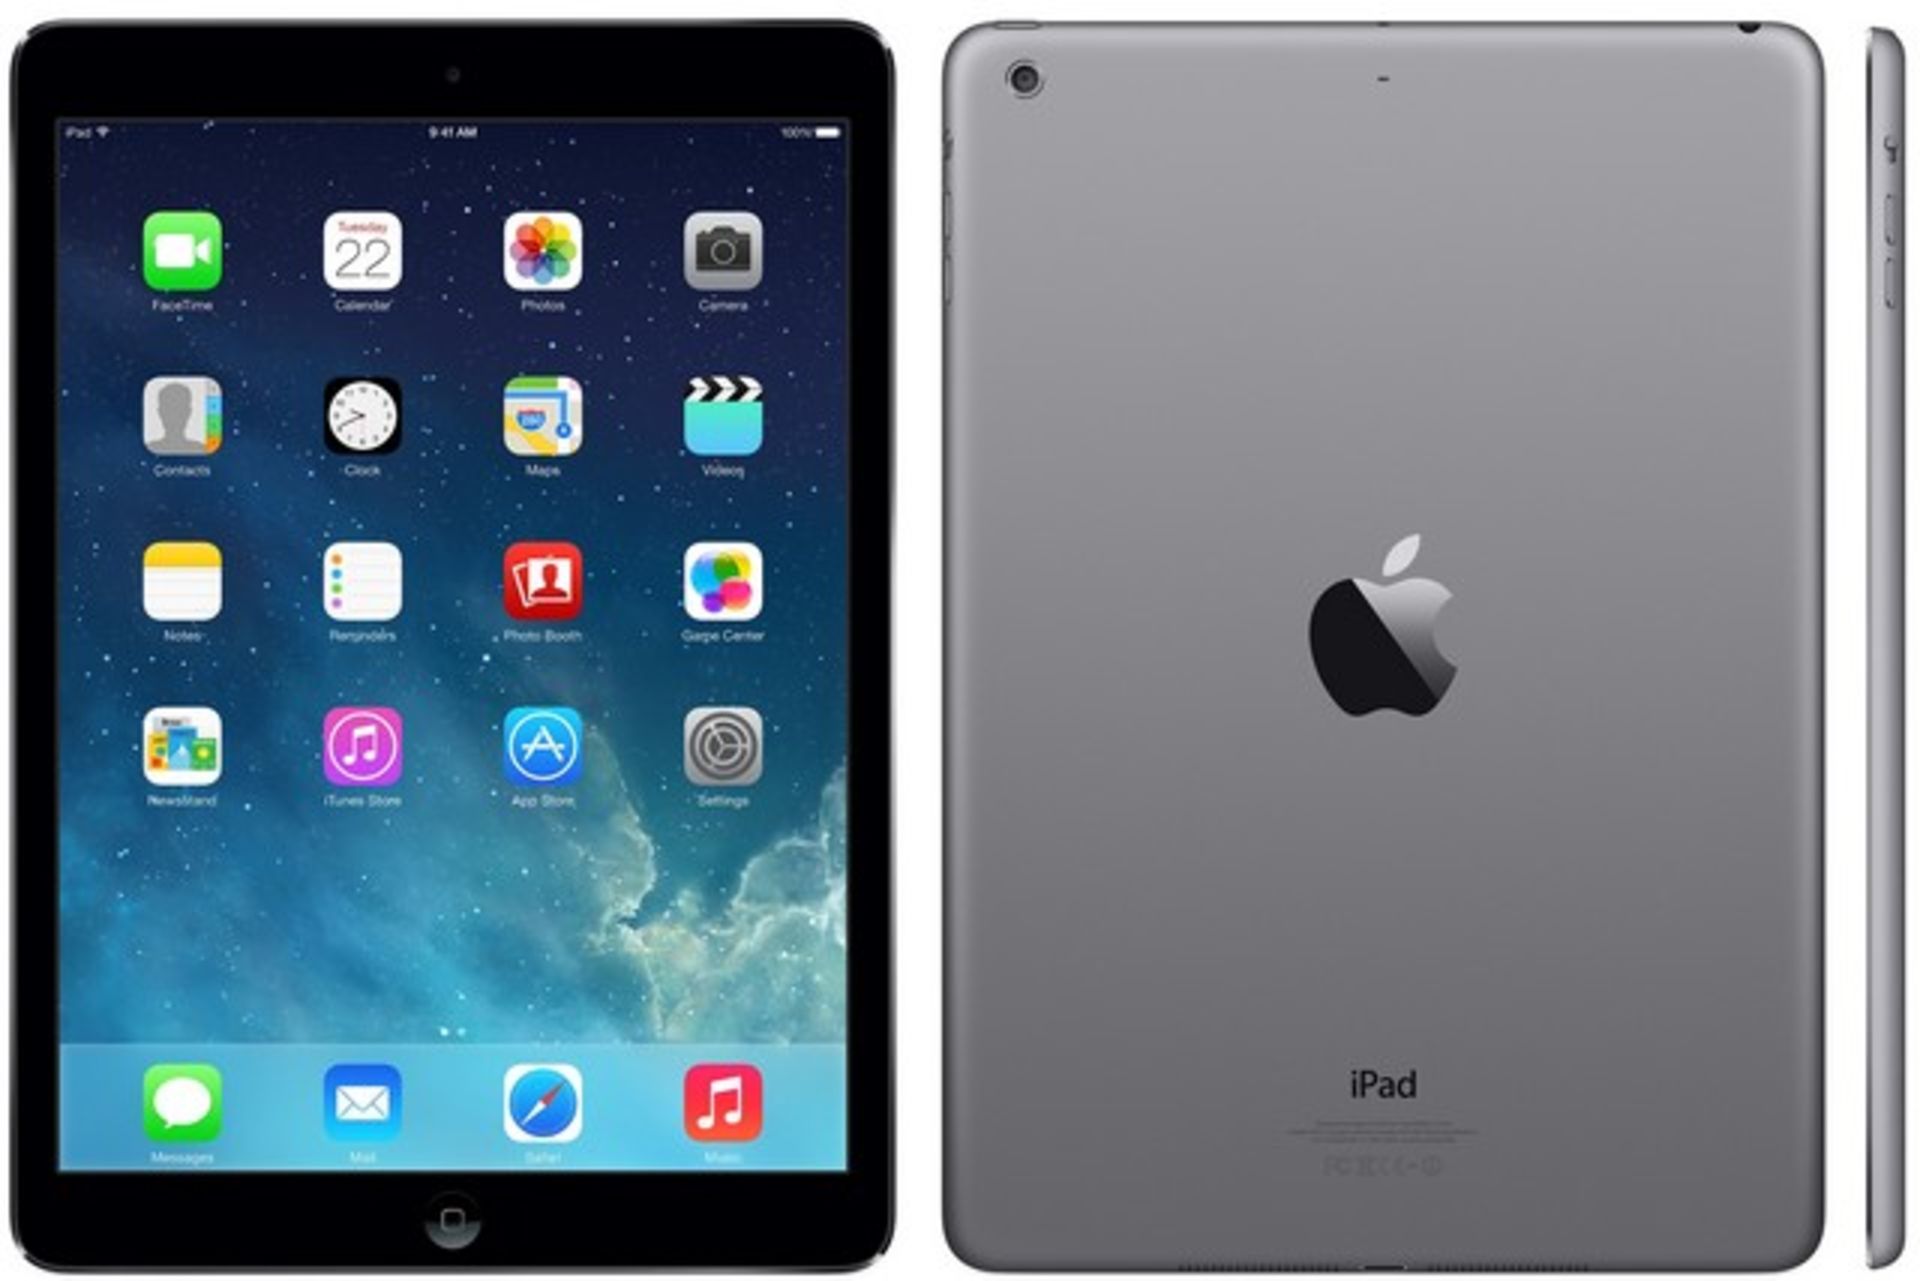 + VAT Grade B Apple Ipad Air 16GB Wi-Fi- 1Gb Ram - 9.7" Display - Unit only - No Box or Accessories